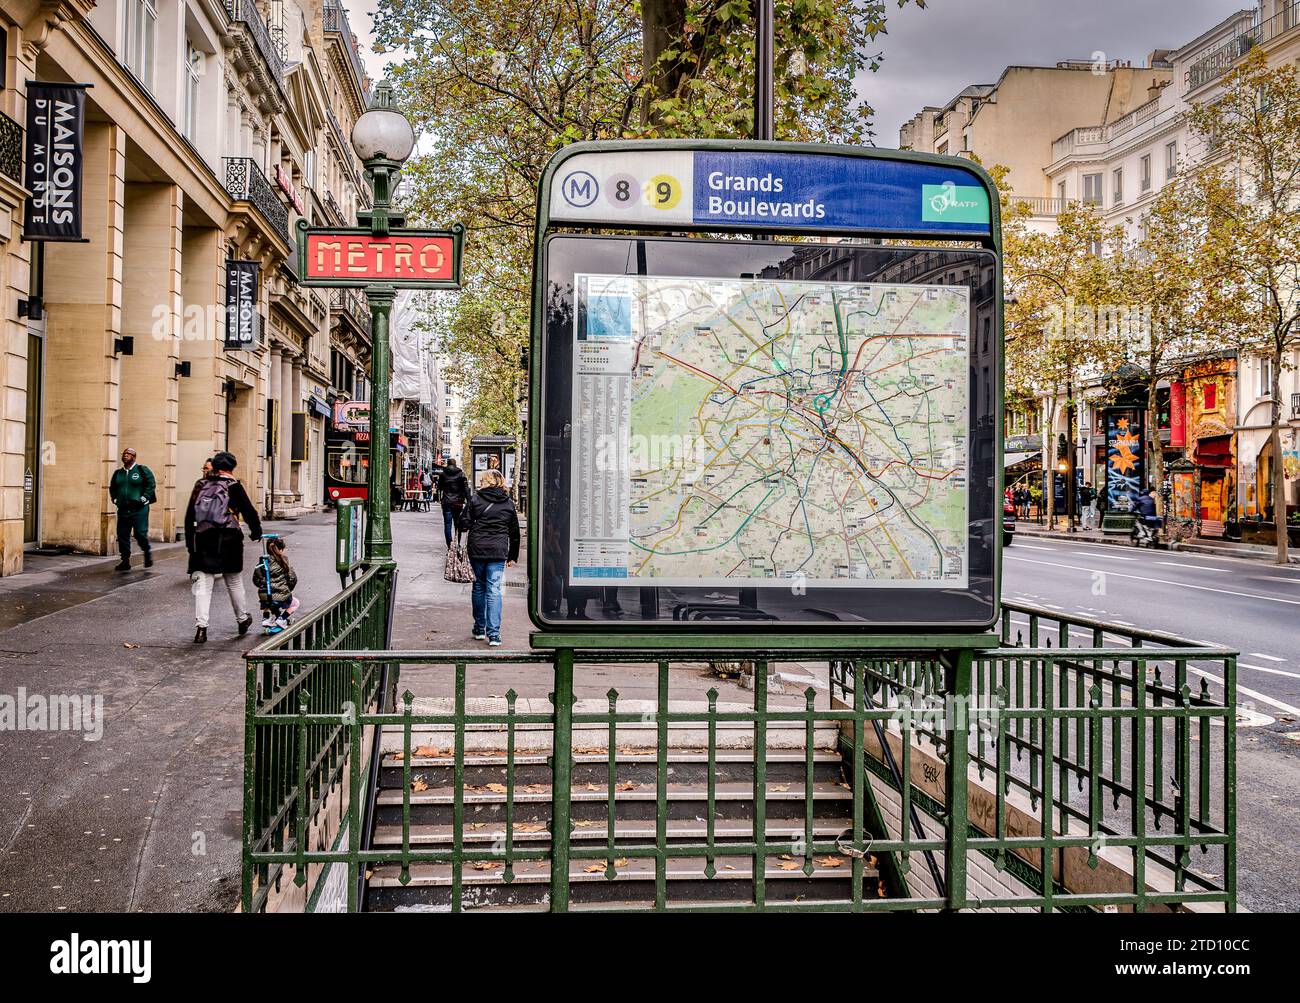 Le métro Dervaux totems à l'entrée de la station de métro Grands Boulevards dans le 9e arrondissement de Paris Banque D'Images